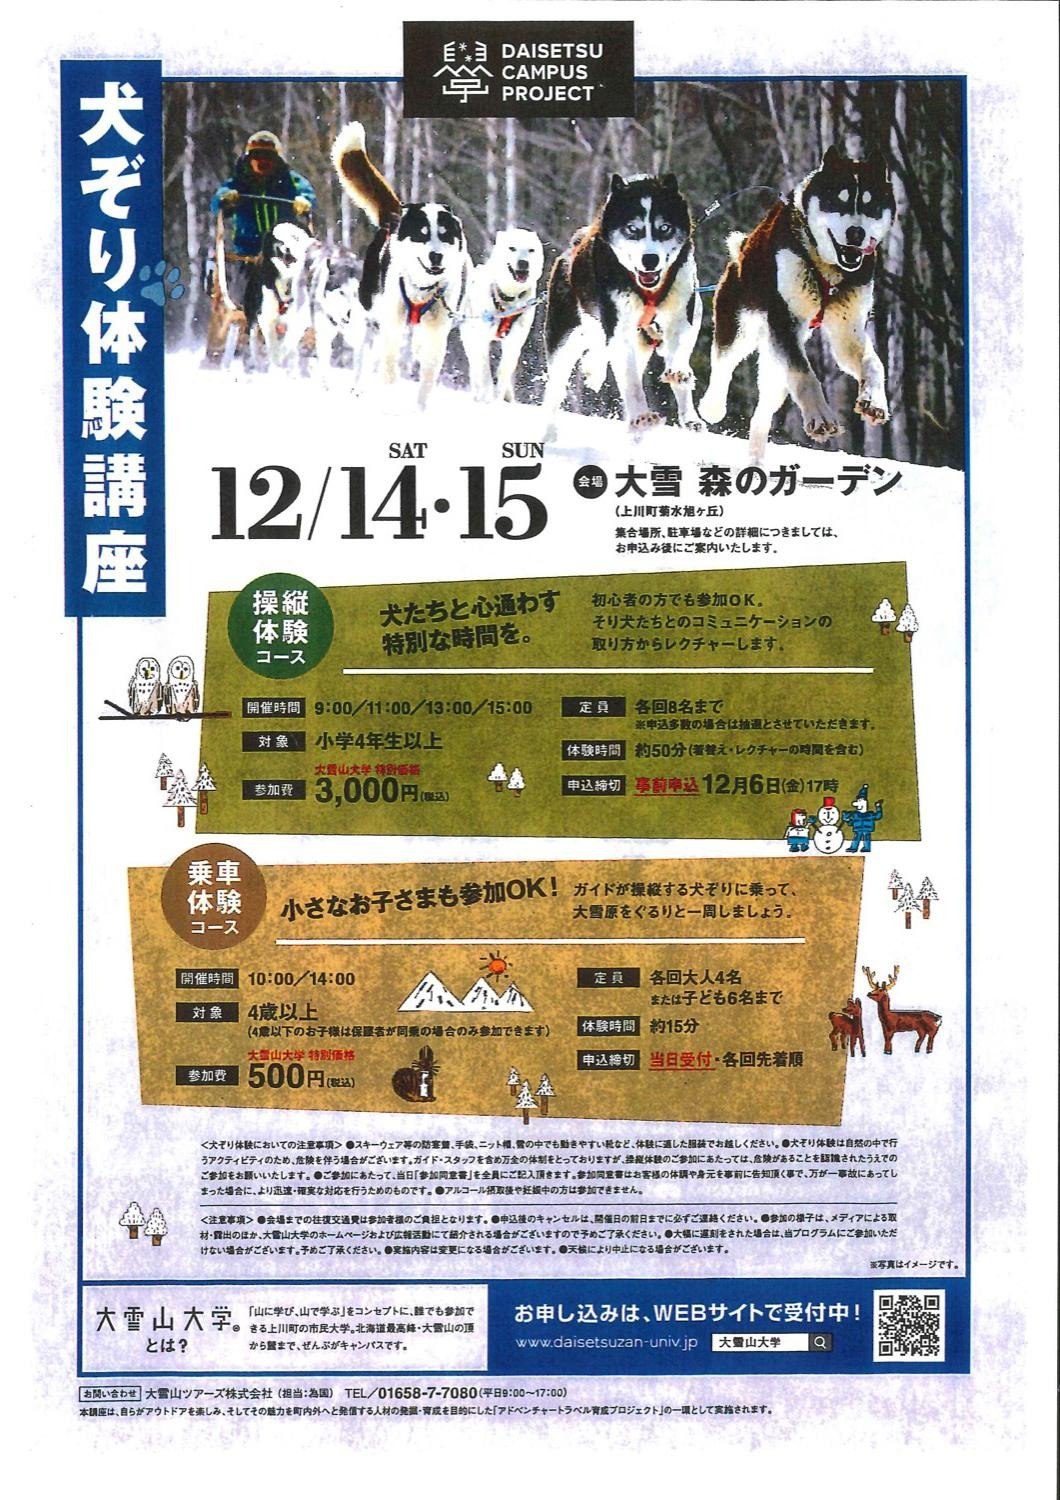 犬ぞり体験講座 上川町 イベント ライナーウェブ